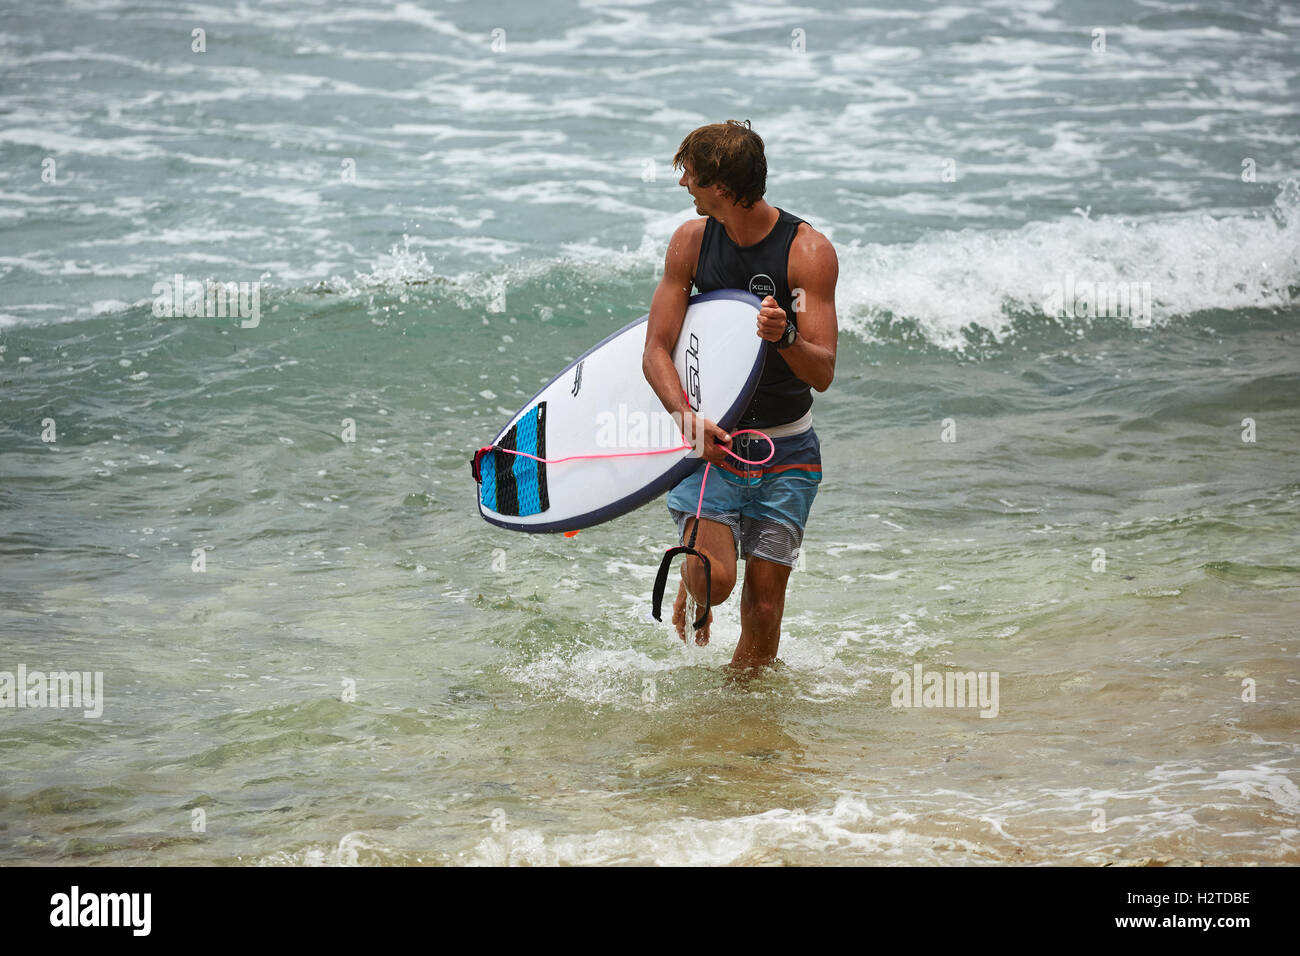 Barbados Atlantikküste Bathsheba rockt ziemlich männliche junge Mann Surfen Surfer Exemplar Surfbretter warten im Meer lifestyl Stockfoto